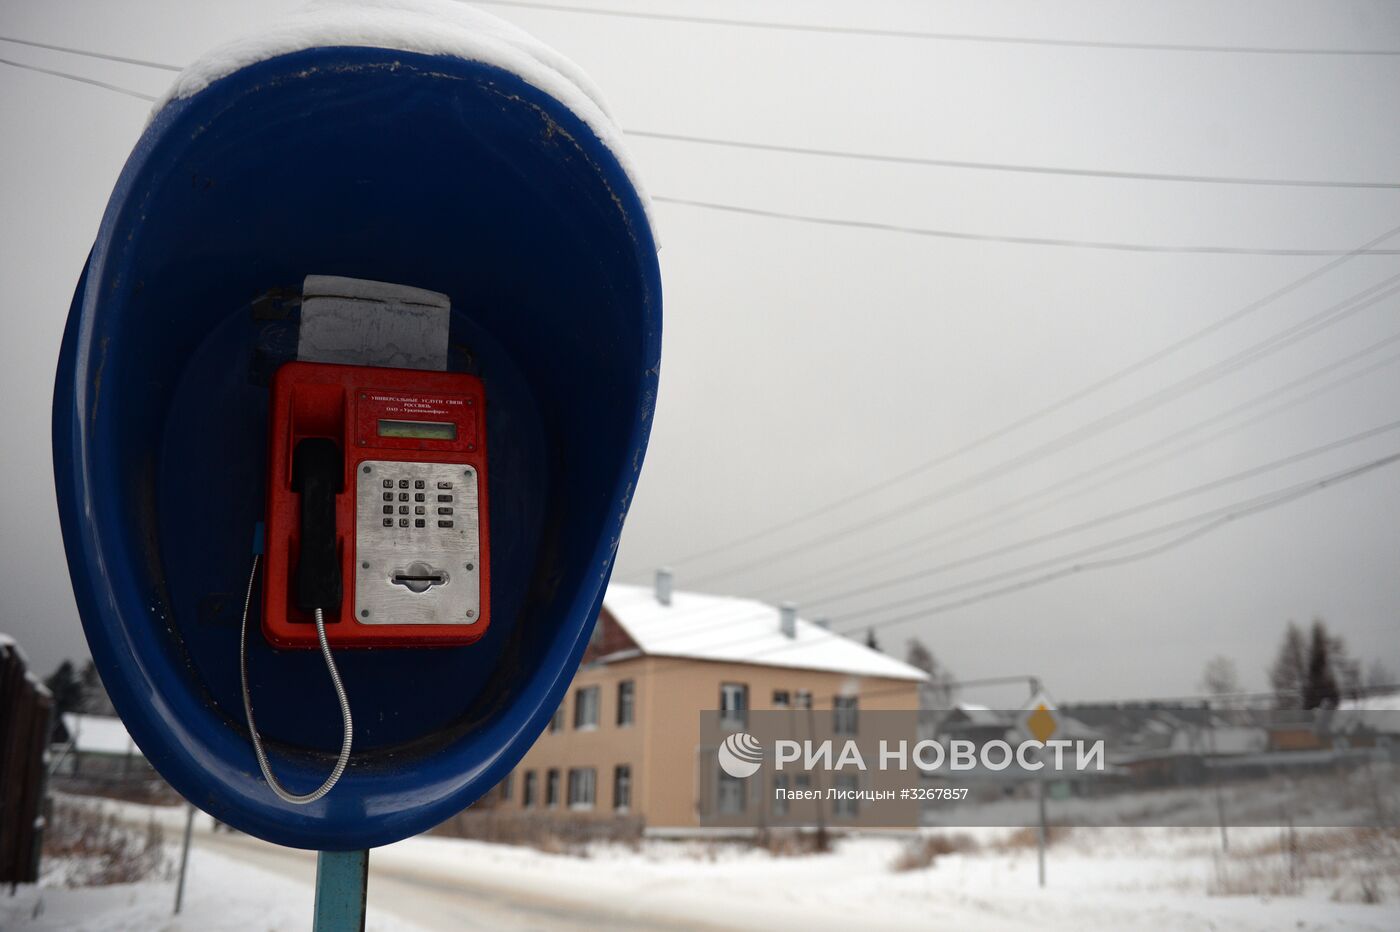 Таксофоны в Свердловской области